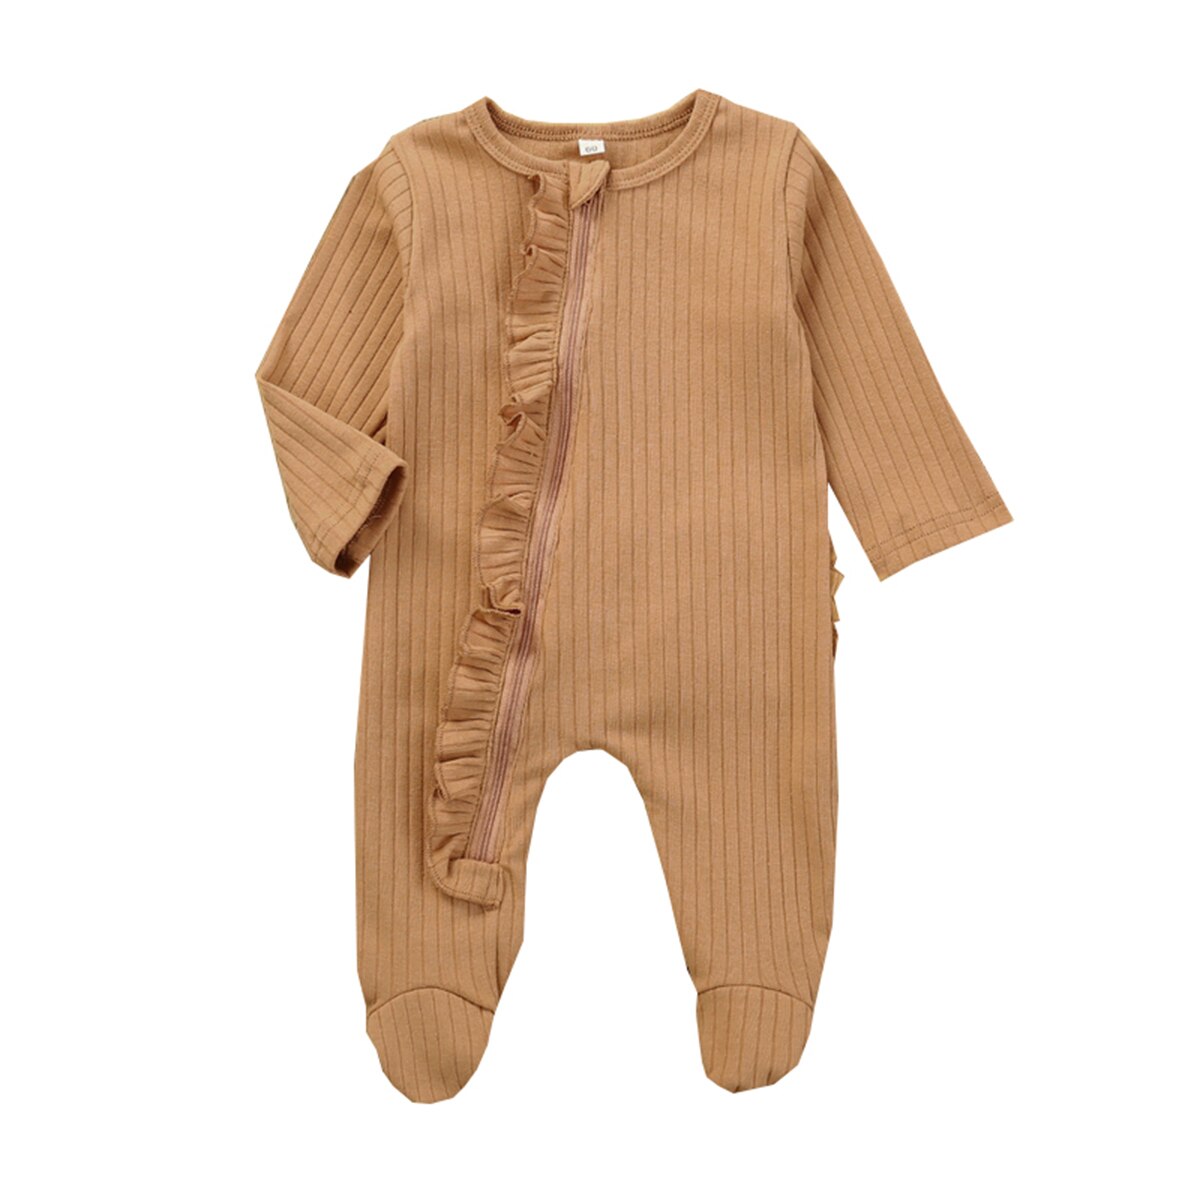 Baby pyjamas spædbarn sødt tøj 0-6 måneder nyfødt dreng pige solid pjusket wrap fod kostume pyjamas blødt varmt outfit: Kaffe / 0-3 måneder